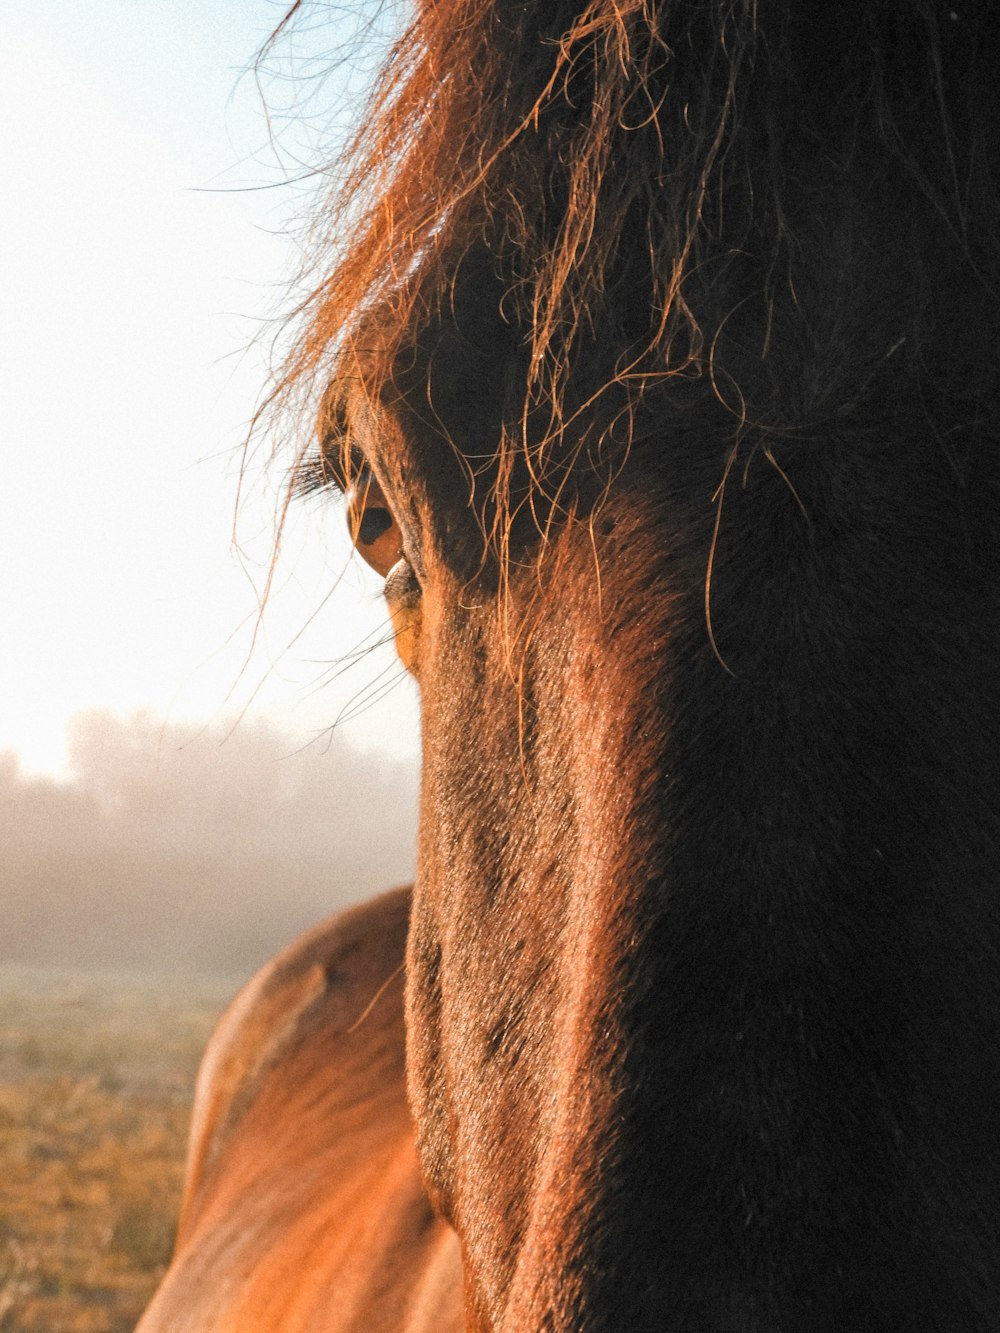 Un caballo marrón parado en la cima de un campo cubierto de hierba